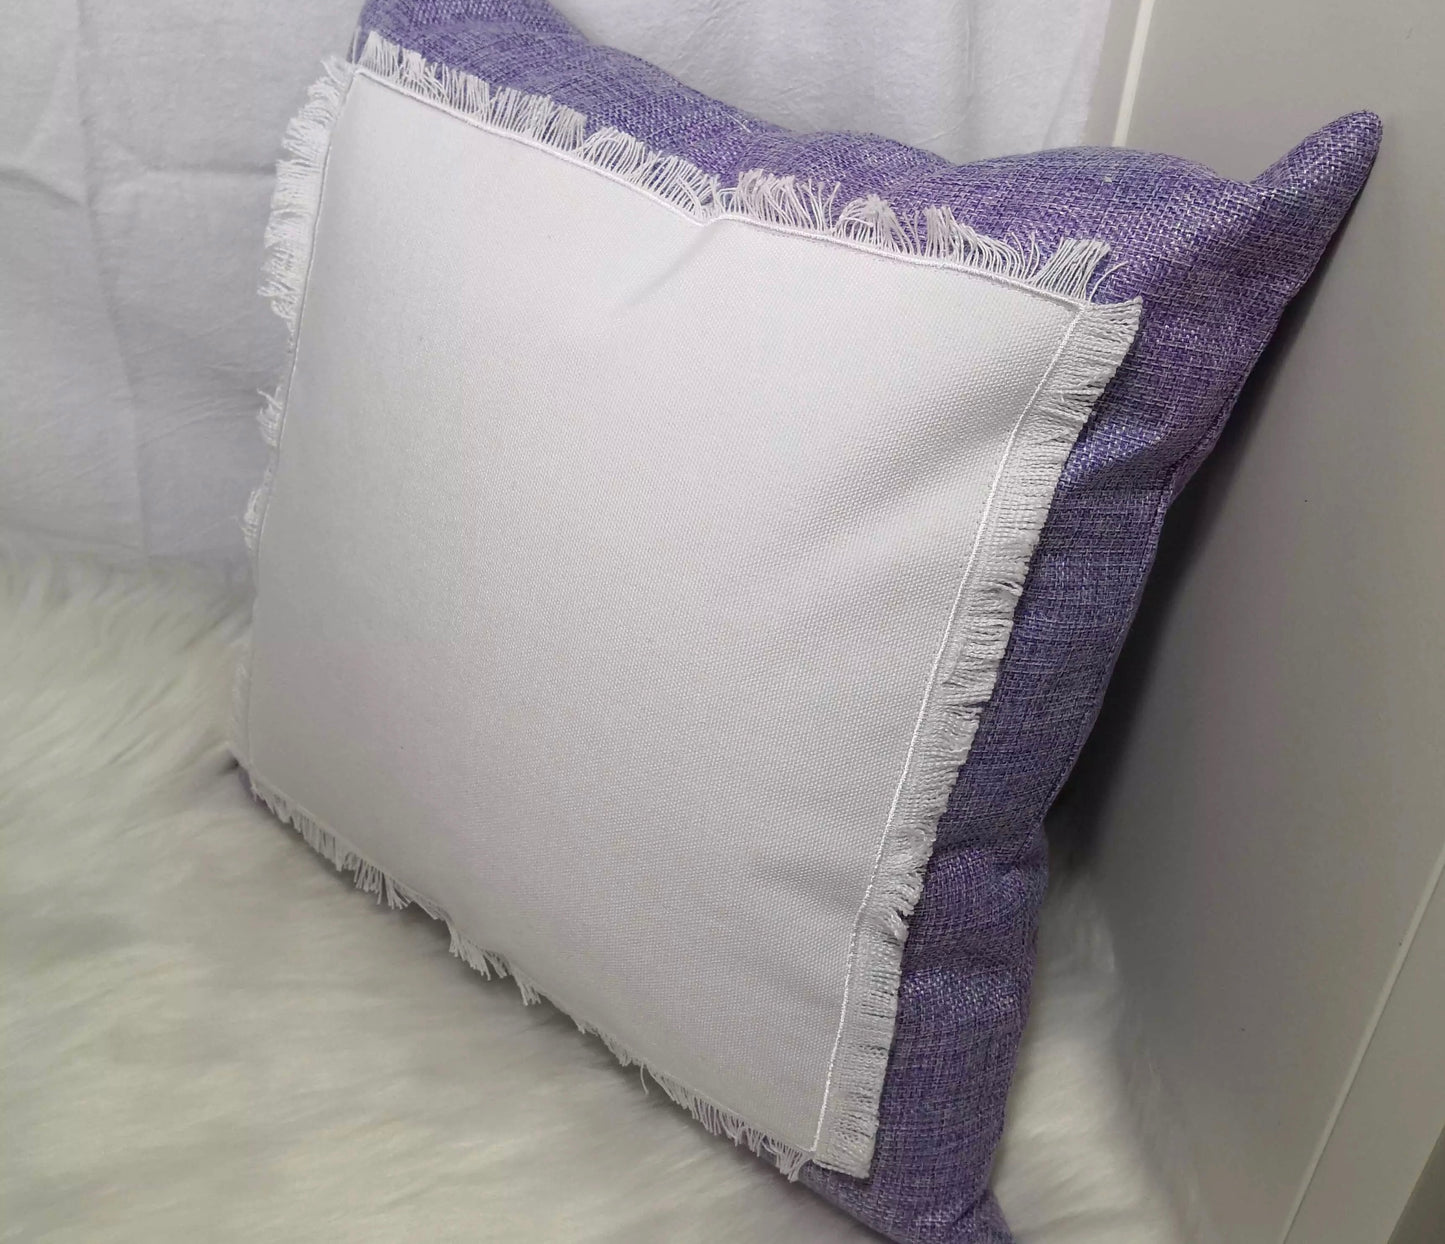 Sublimation Linen Patch Pillow Cover